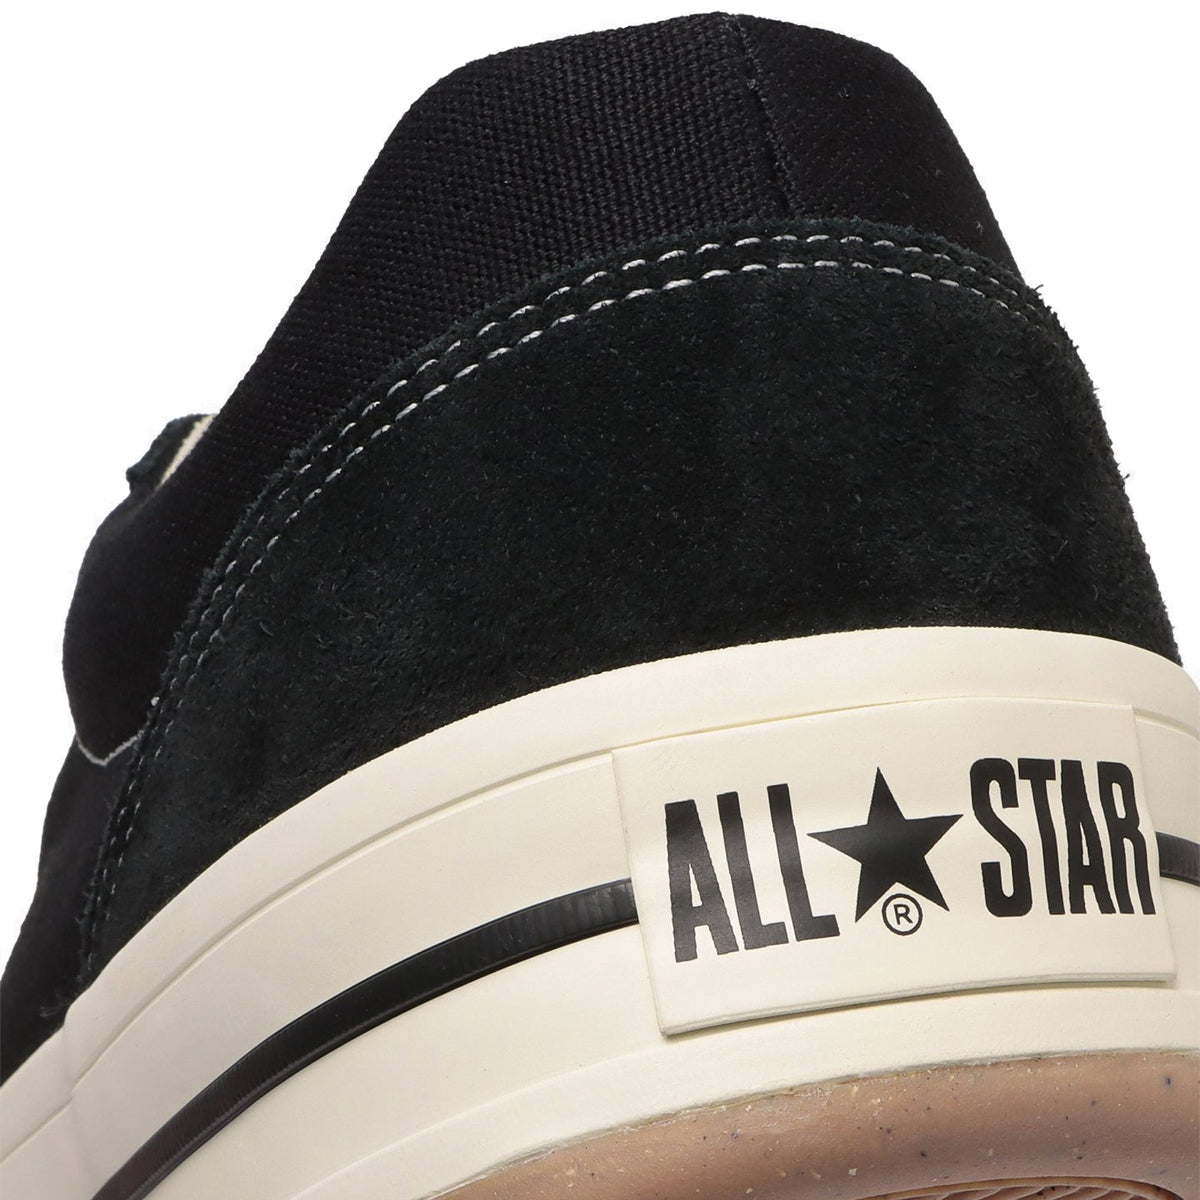 ALL STAR (R) BOARDERSTAR OX 【予約】2月27日発売予定【返品交換キャンセル不可】